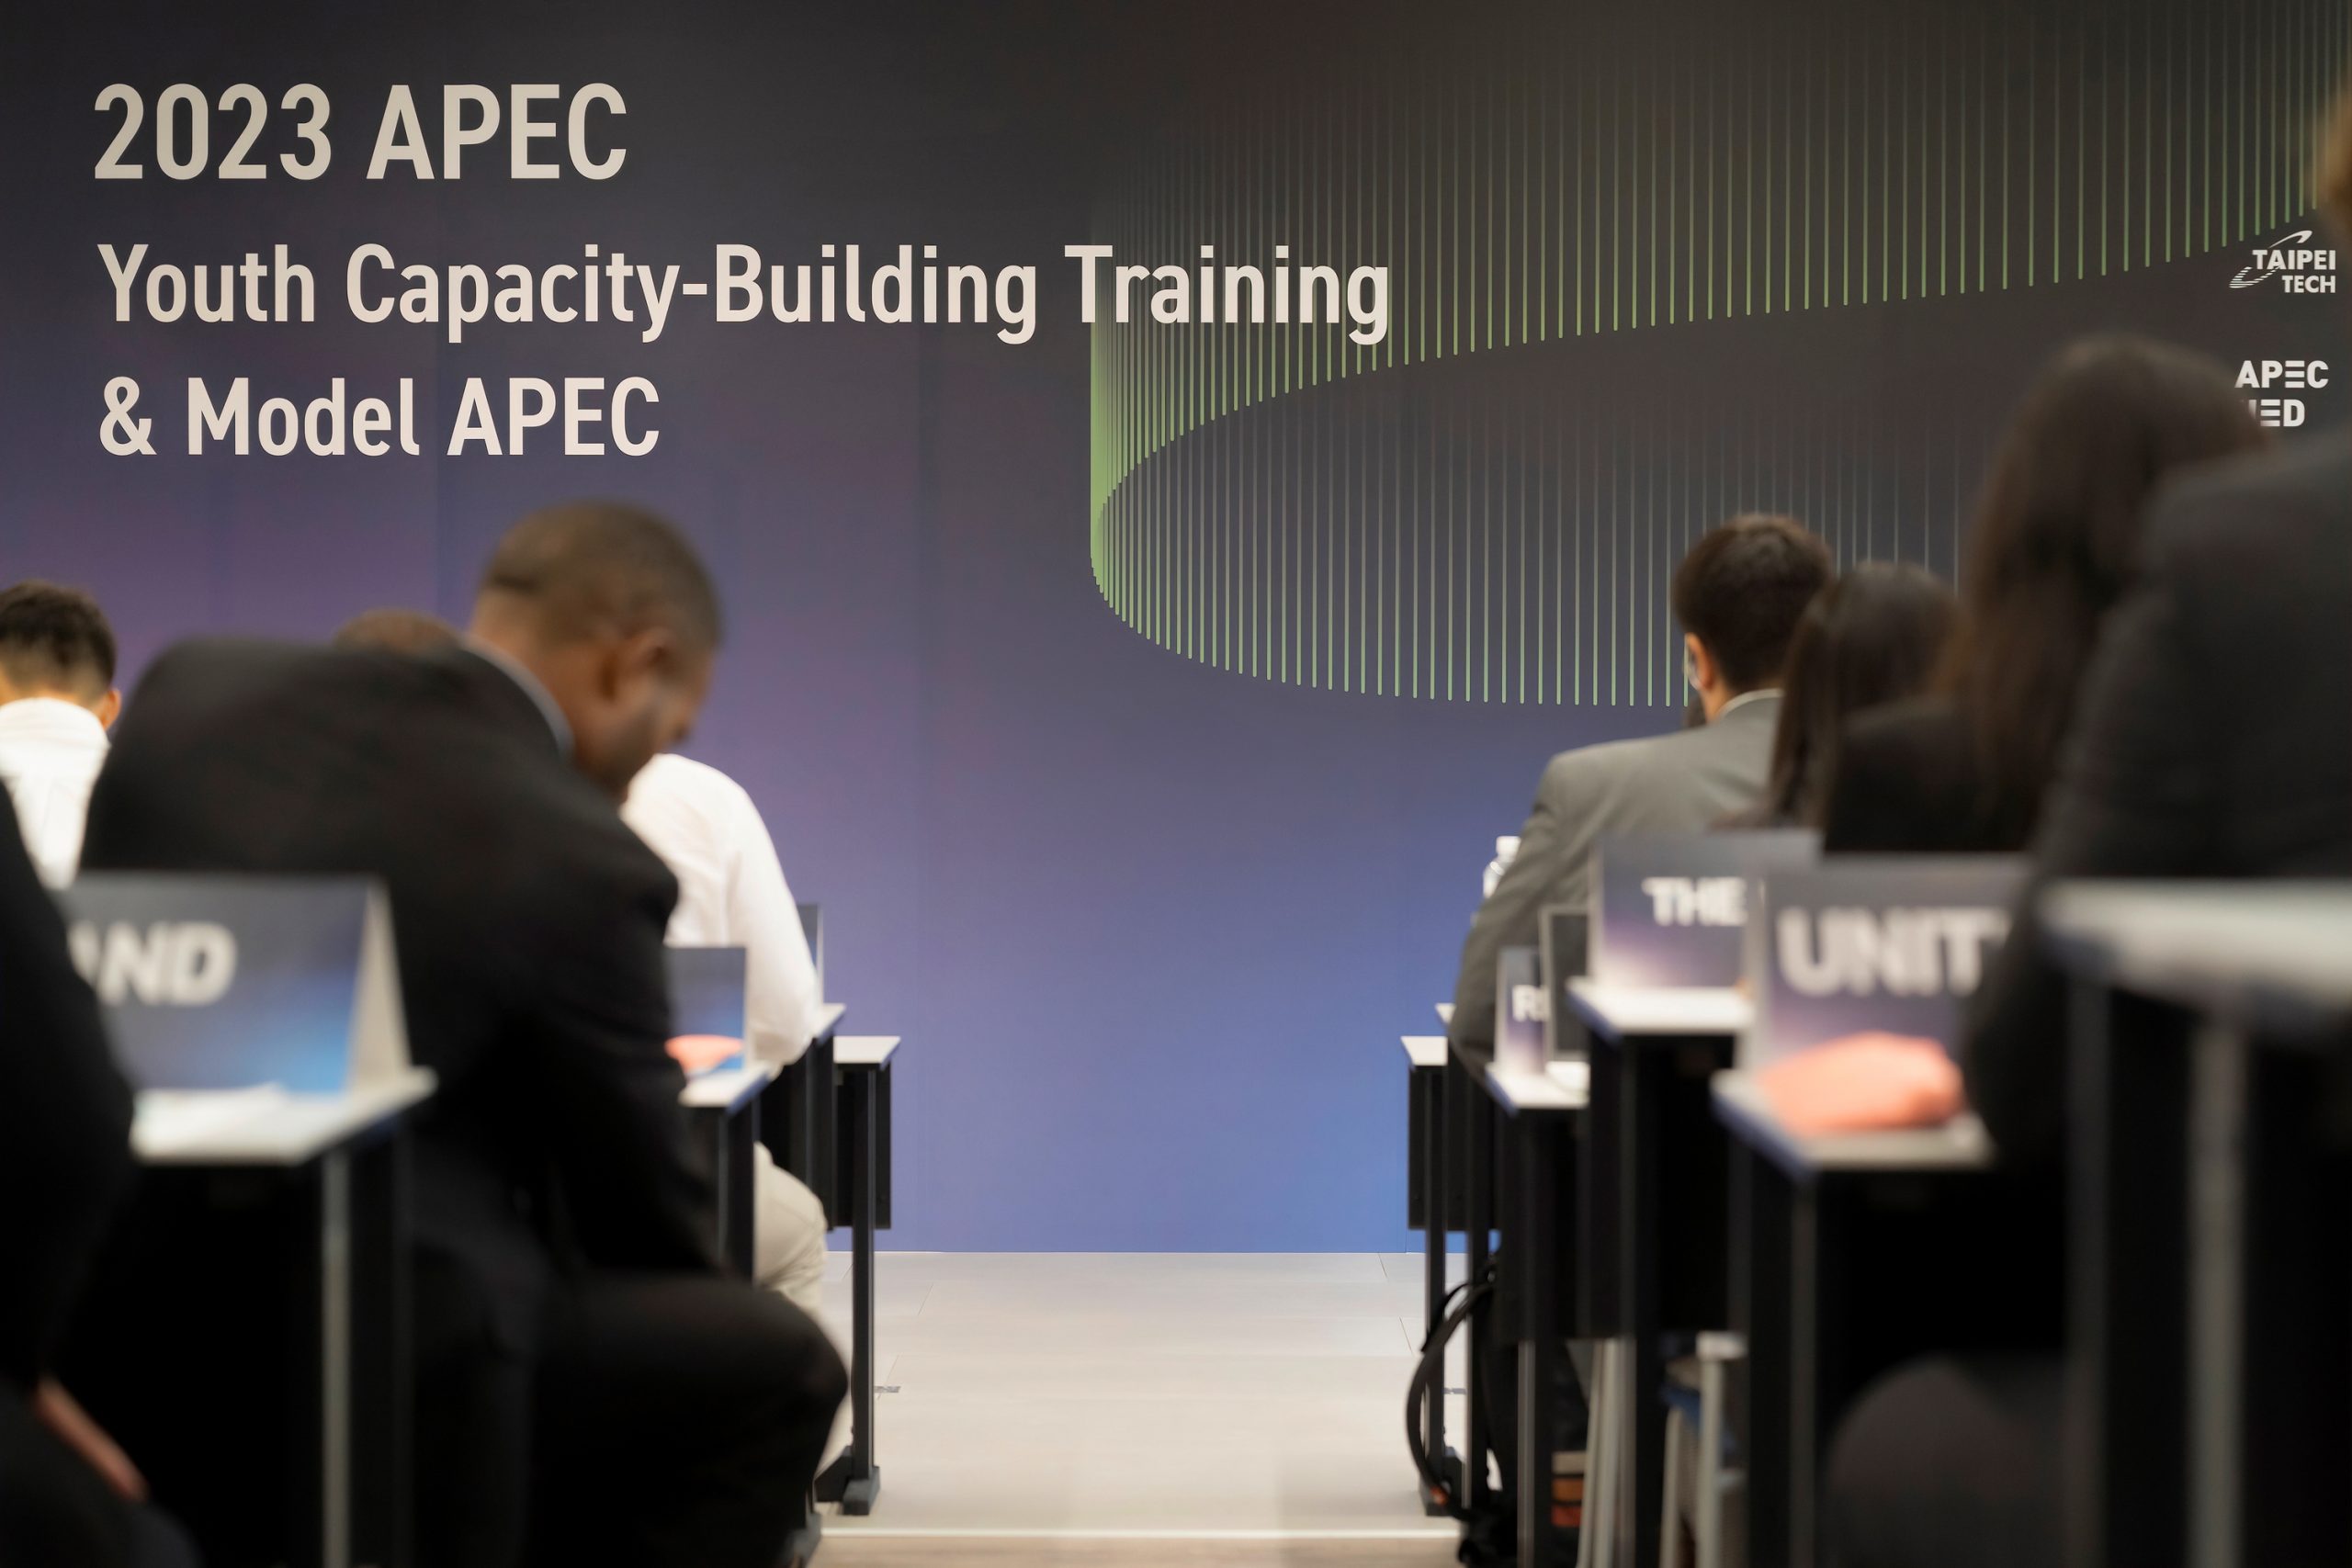 #EntrevistasCAMSantiago: Claudio F. Osses Garrido y su participación en «APEC Youth Capacity-Building Training & Model APEC» en Taipéi